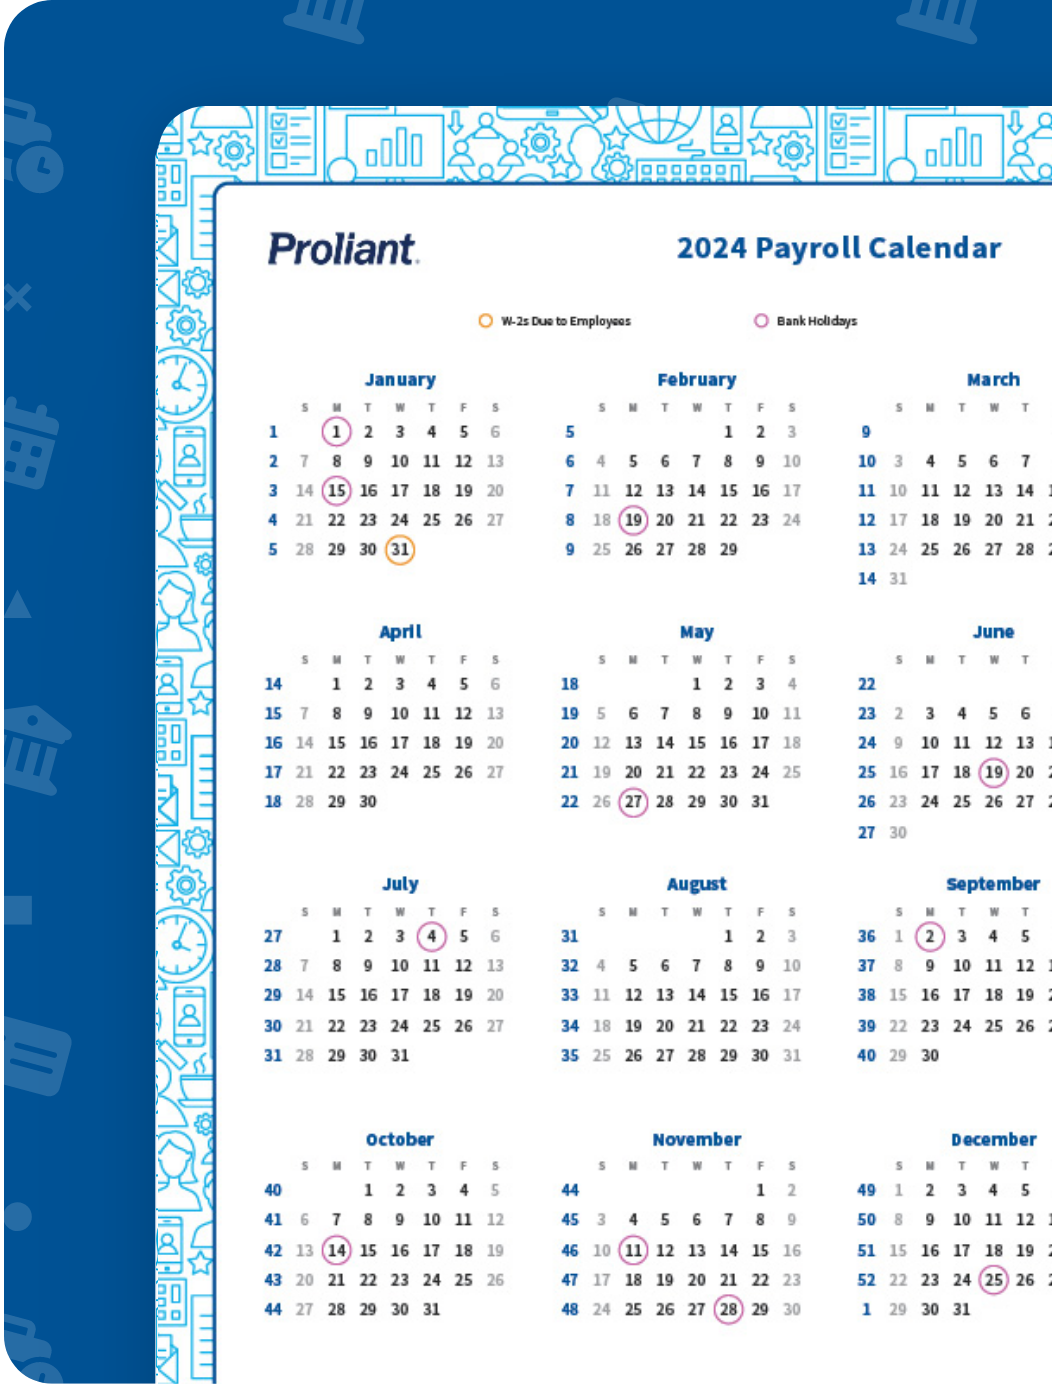 proliant-payroll-banking-holiday-calendar-mockup-md